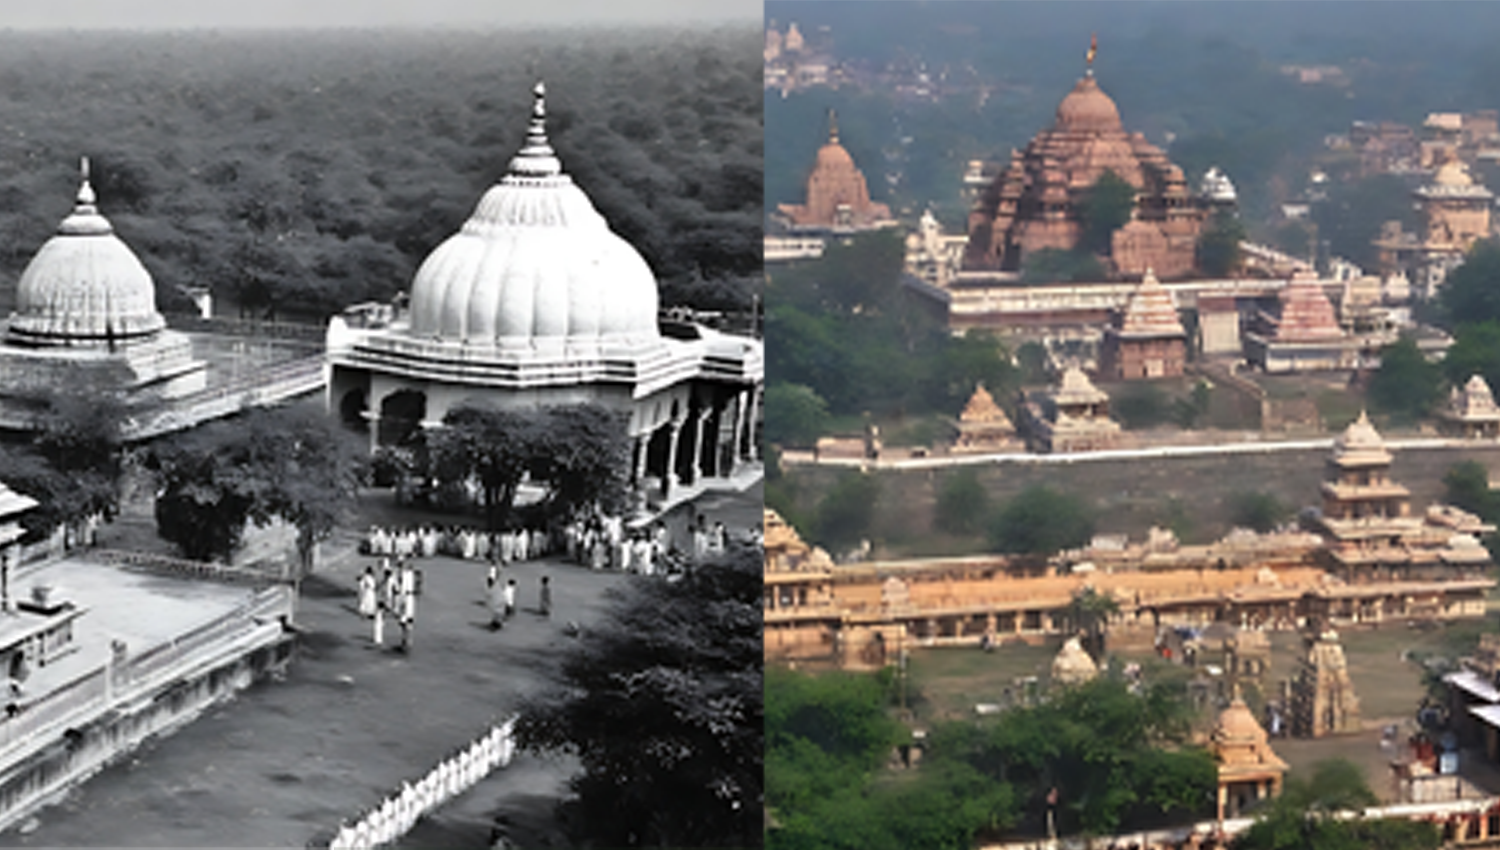 क्या है राम मंदिर का इतिहासः आइए जानते हैं  राम मंदिर: एक समृद्धि और एकता की नई कहानी